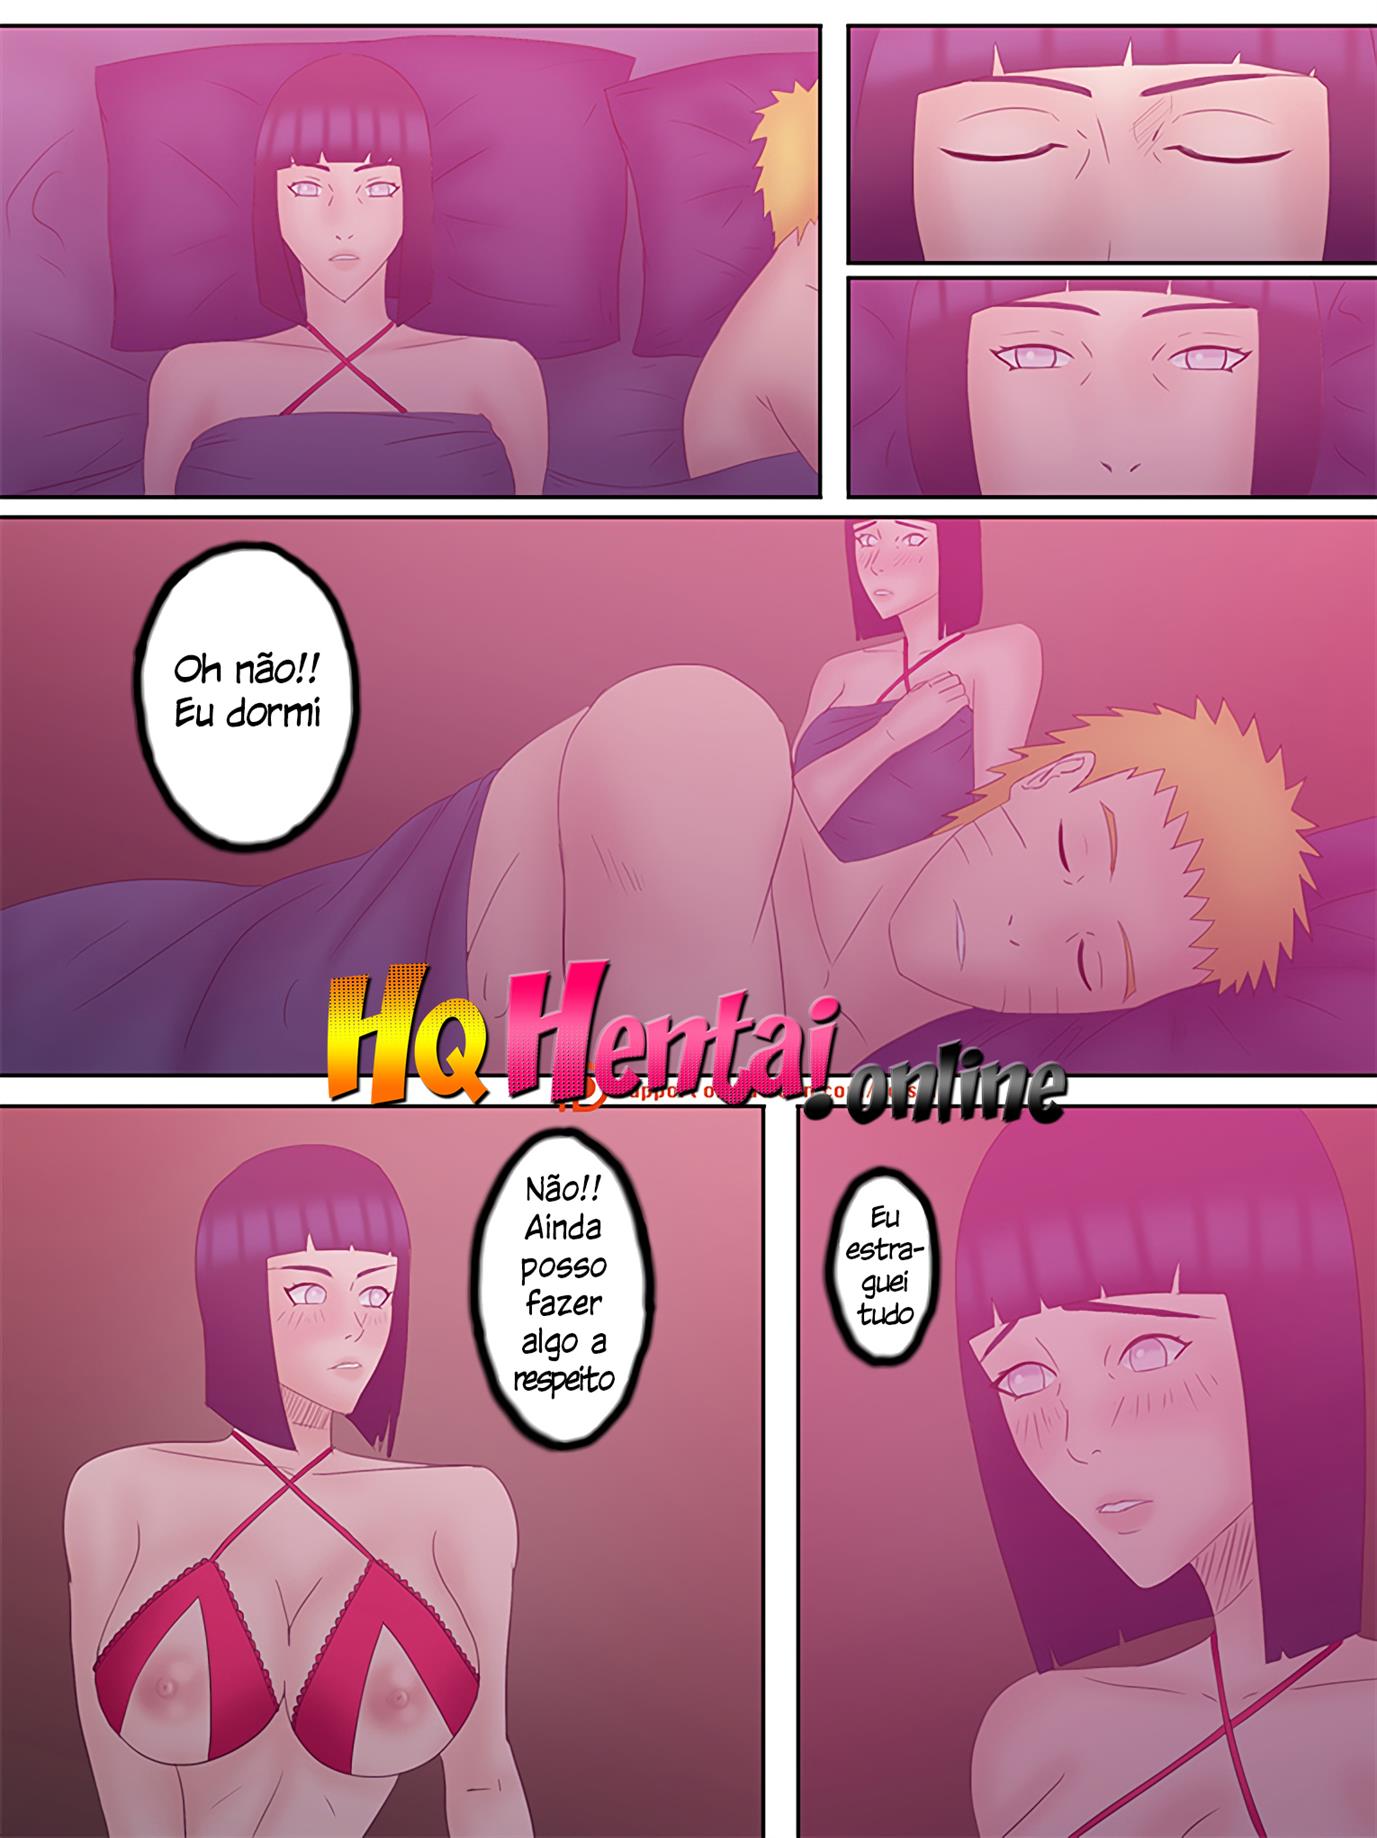 Naruto em troca de casais 1